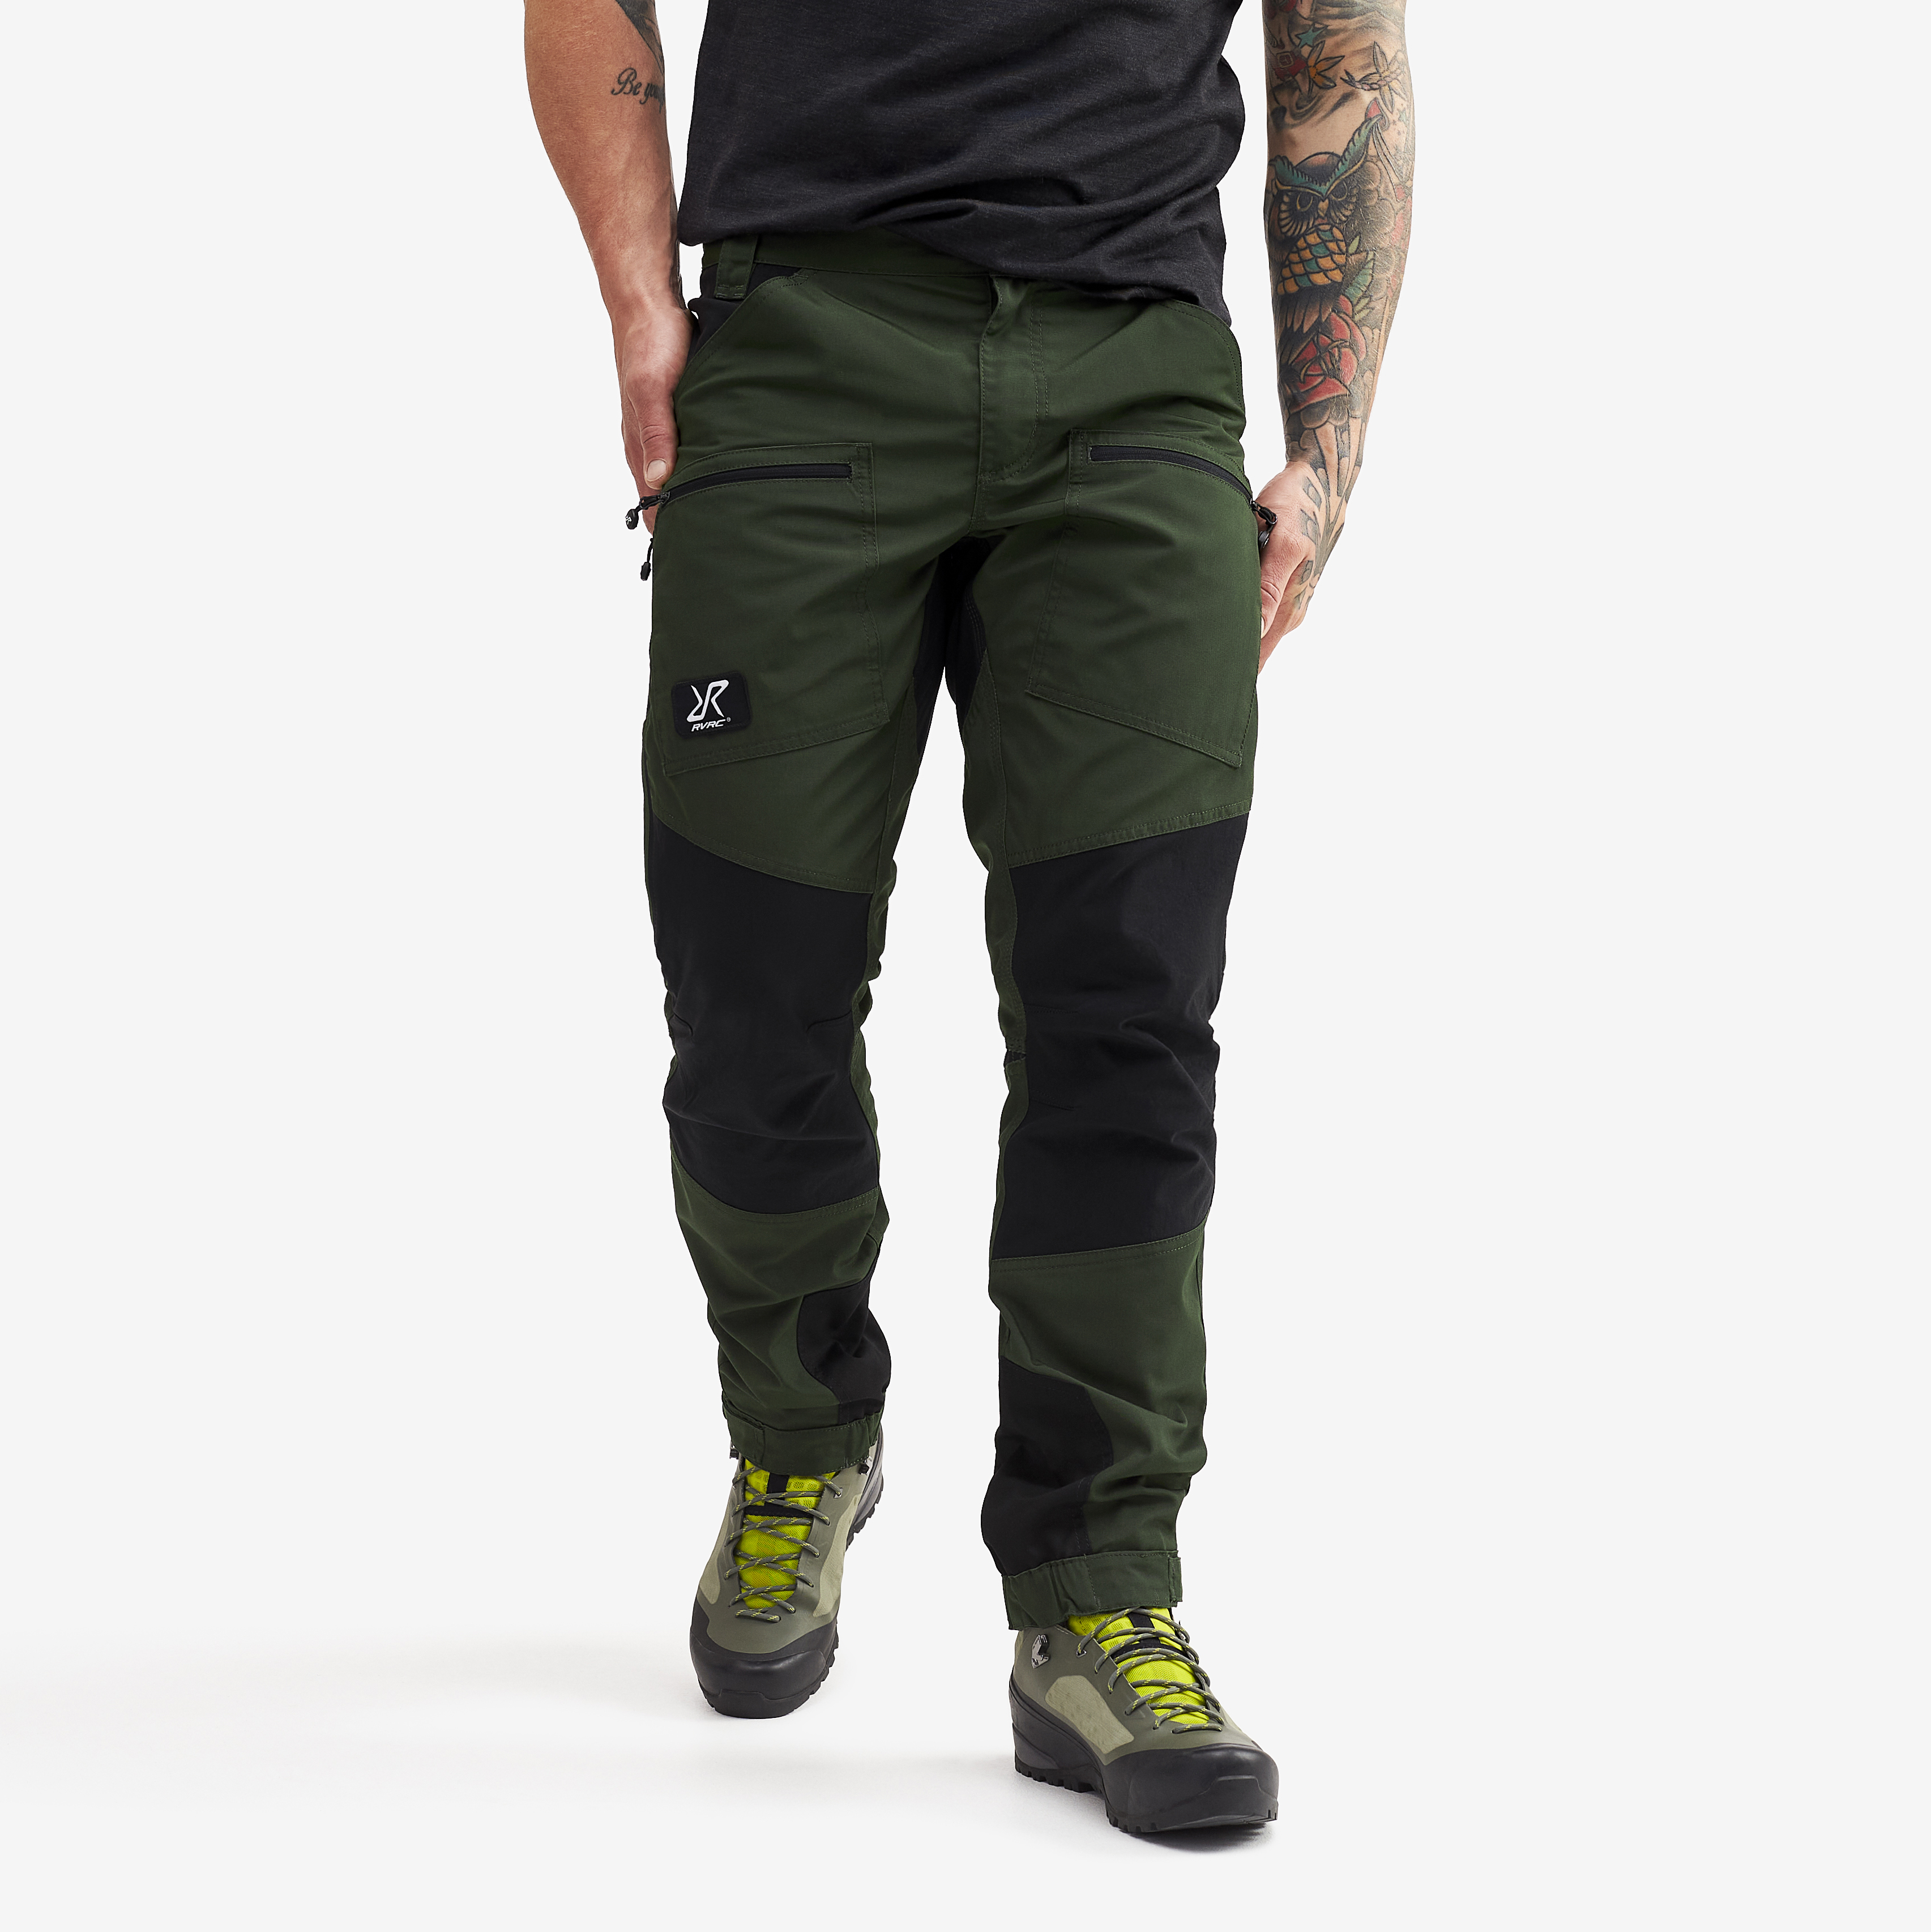 Nordwand Pro Short turistické kalhoty pro muže v zelené barvě